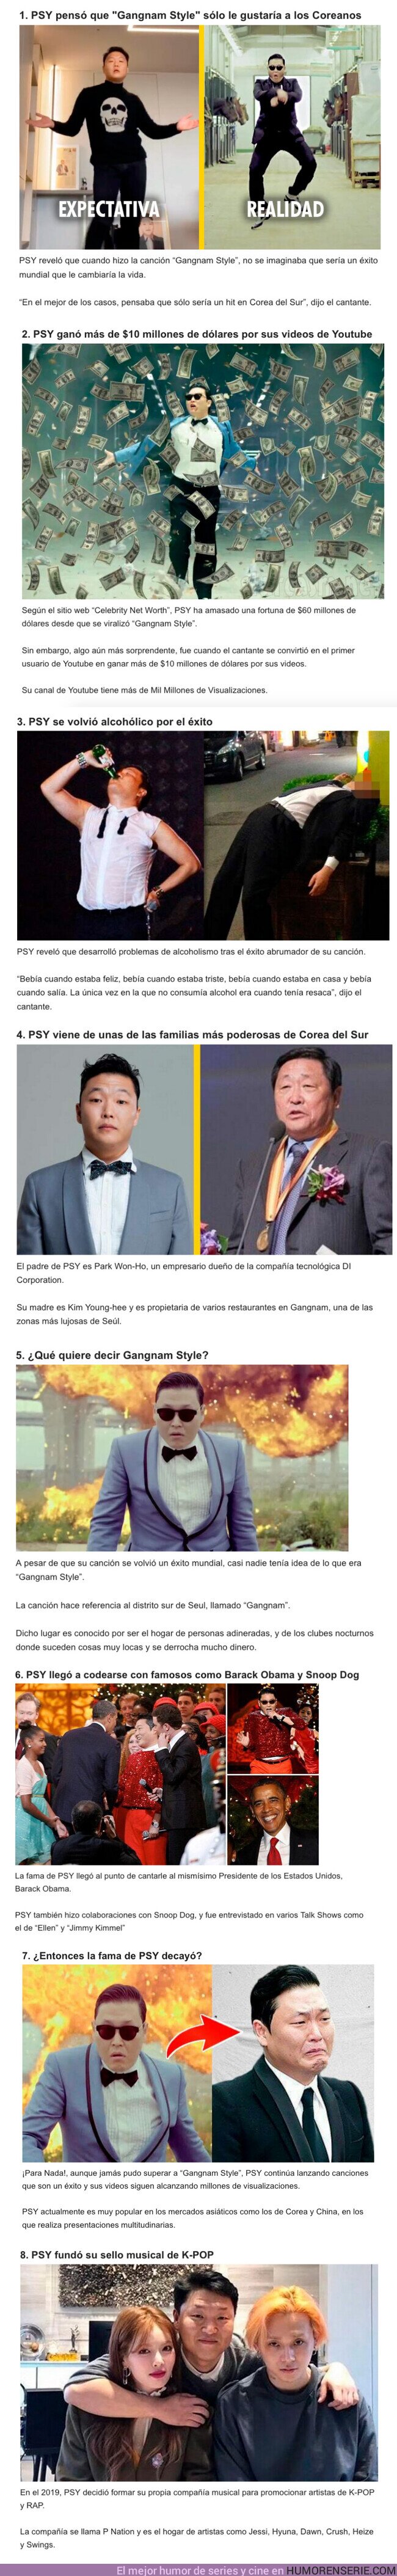 104536 - GALERÍA: 8 Cosas que pasaron con “PSY” luego de su éxito con el “Gangnam Style”